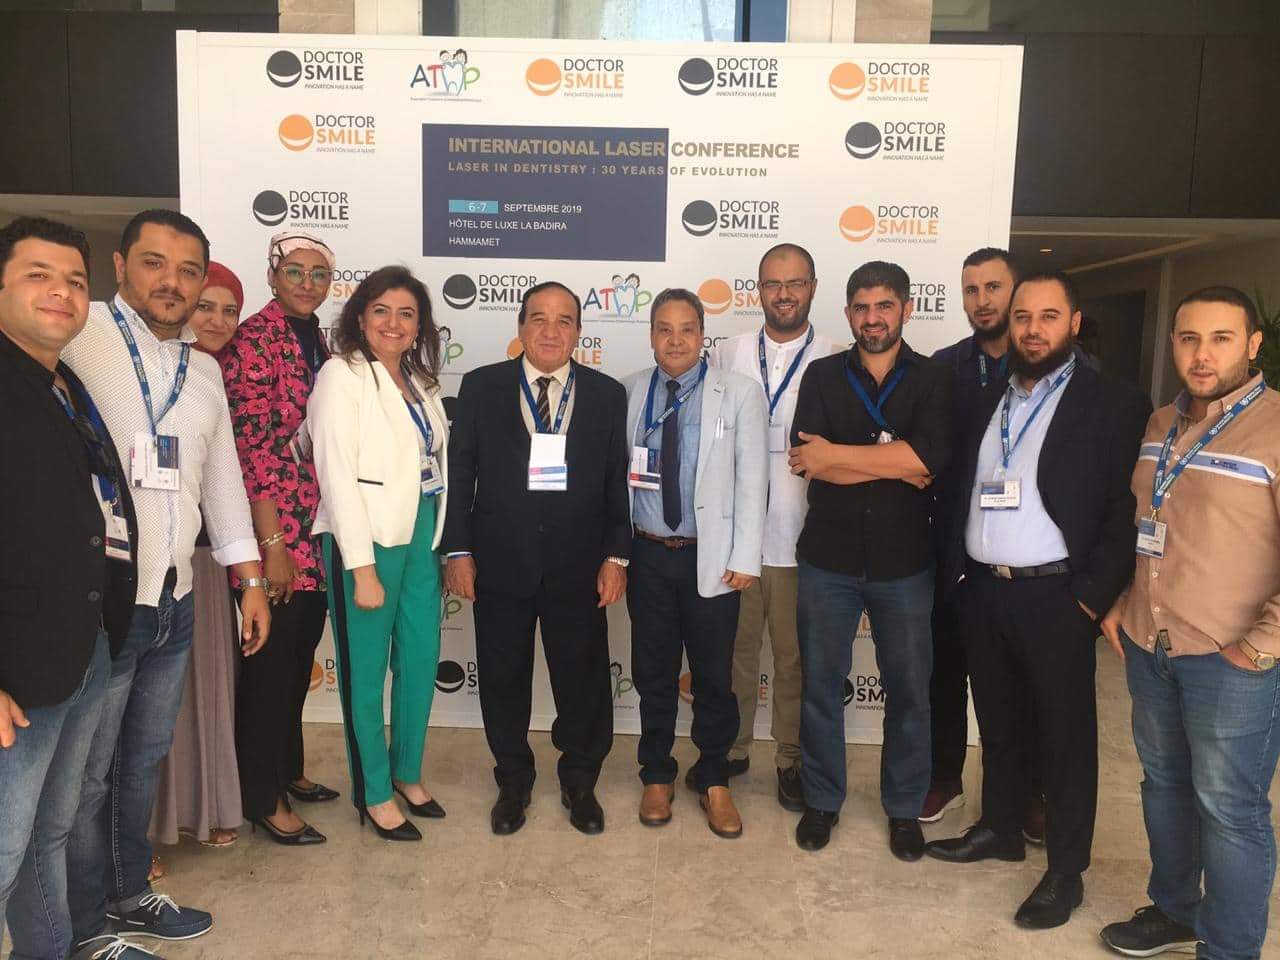   بالصور || جامعة مصر تشارك فى المؤتمر العالمي لتطبيقات الليزر في «طب الاسنان» بتونس 